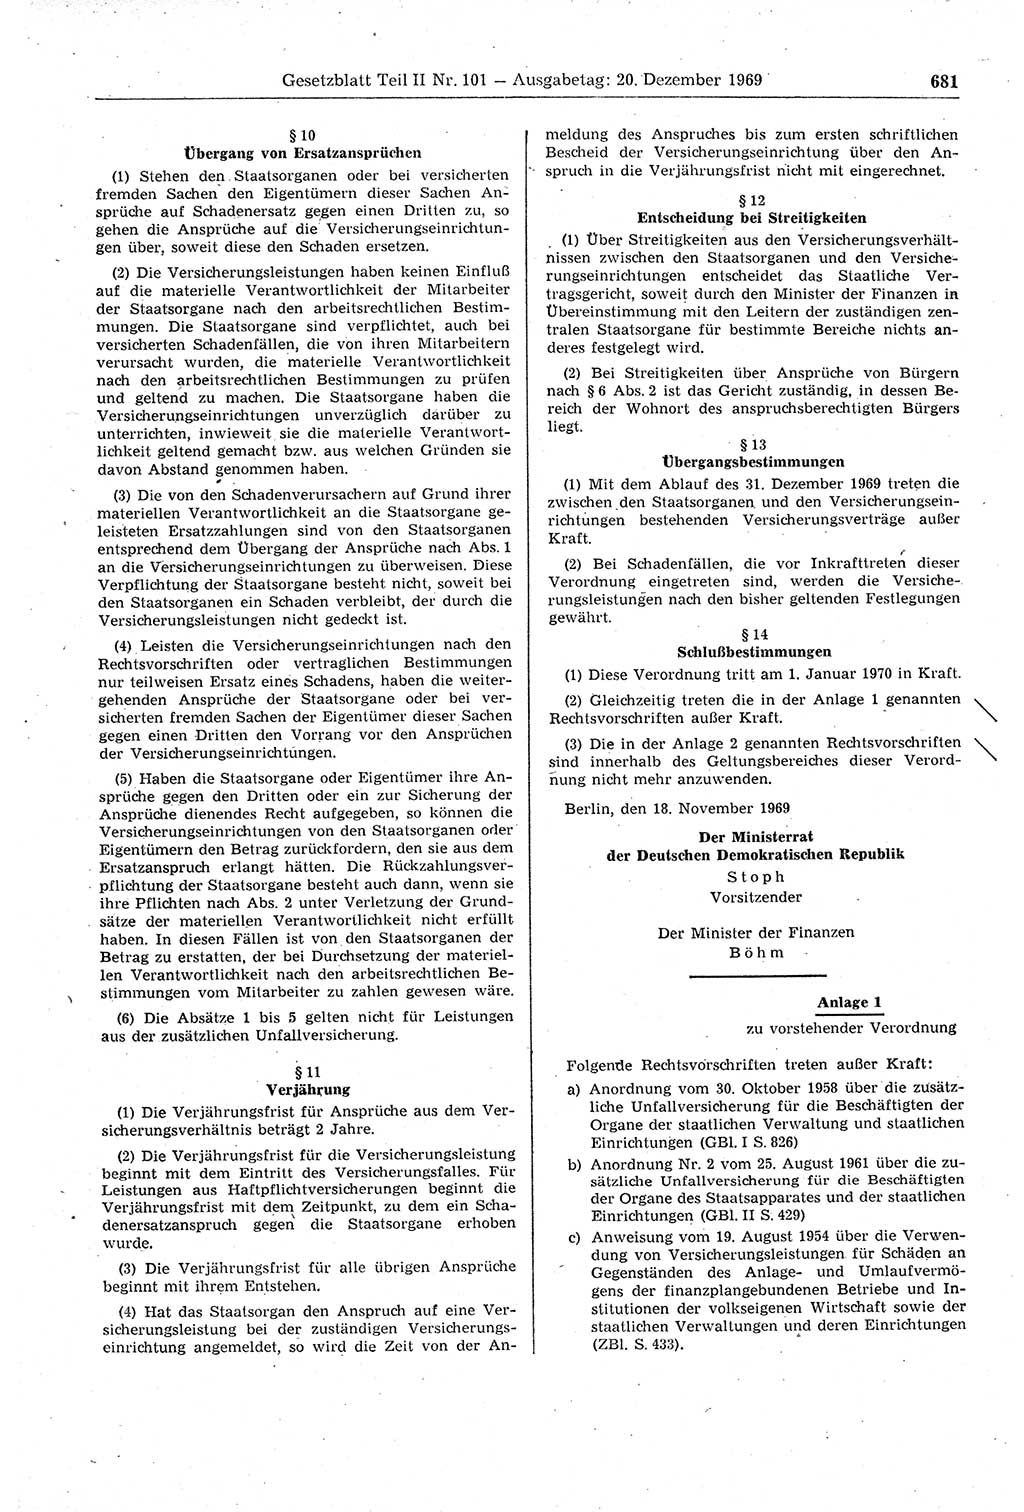 Gesetzblatt (GBl.) der Deutschen Demokratischen Republik (DDR) Teil ⅠⅠ 1969, Seite 681 (GBl. DDR ⅠⅠ 1969, S. 681)